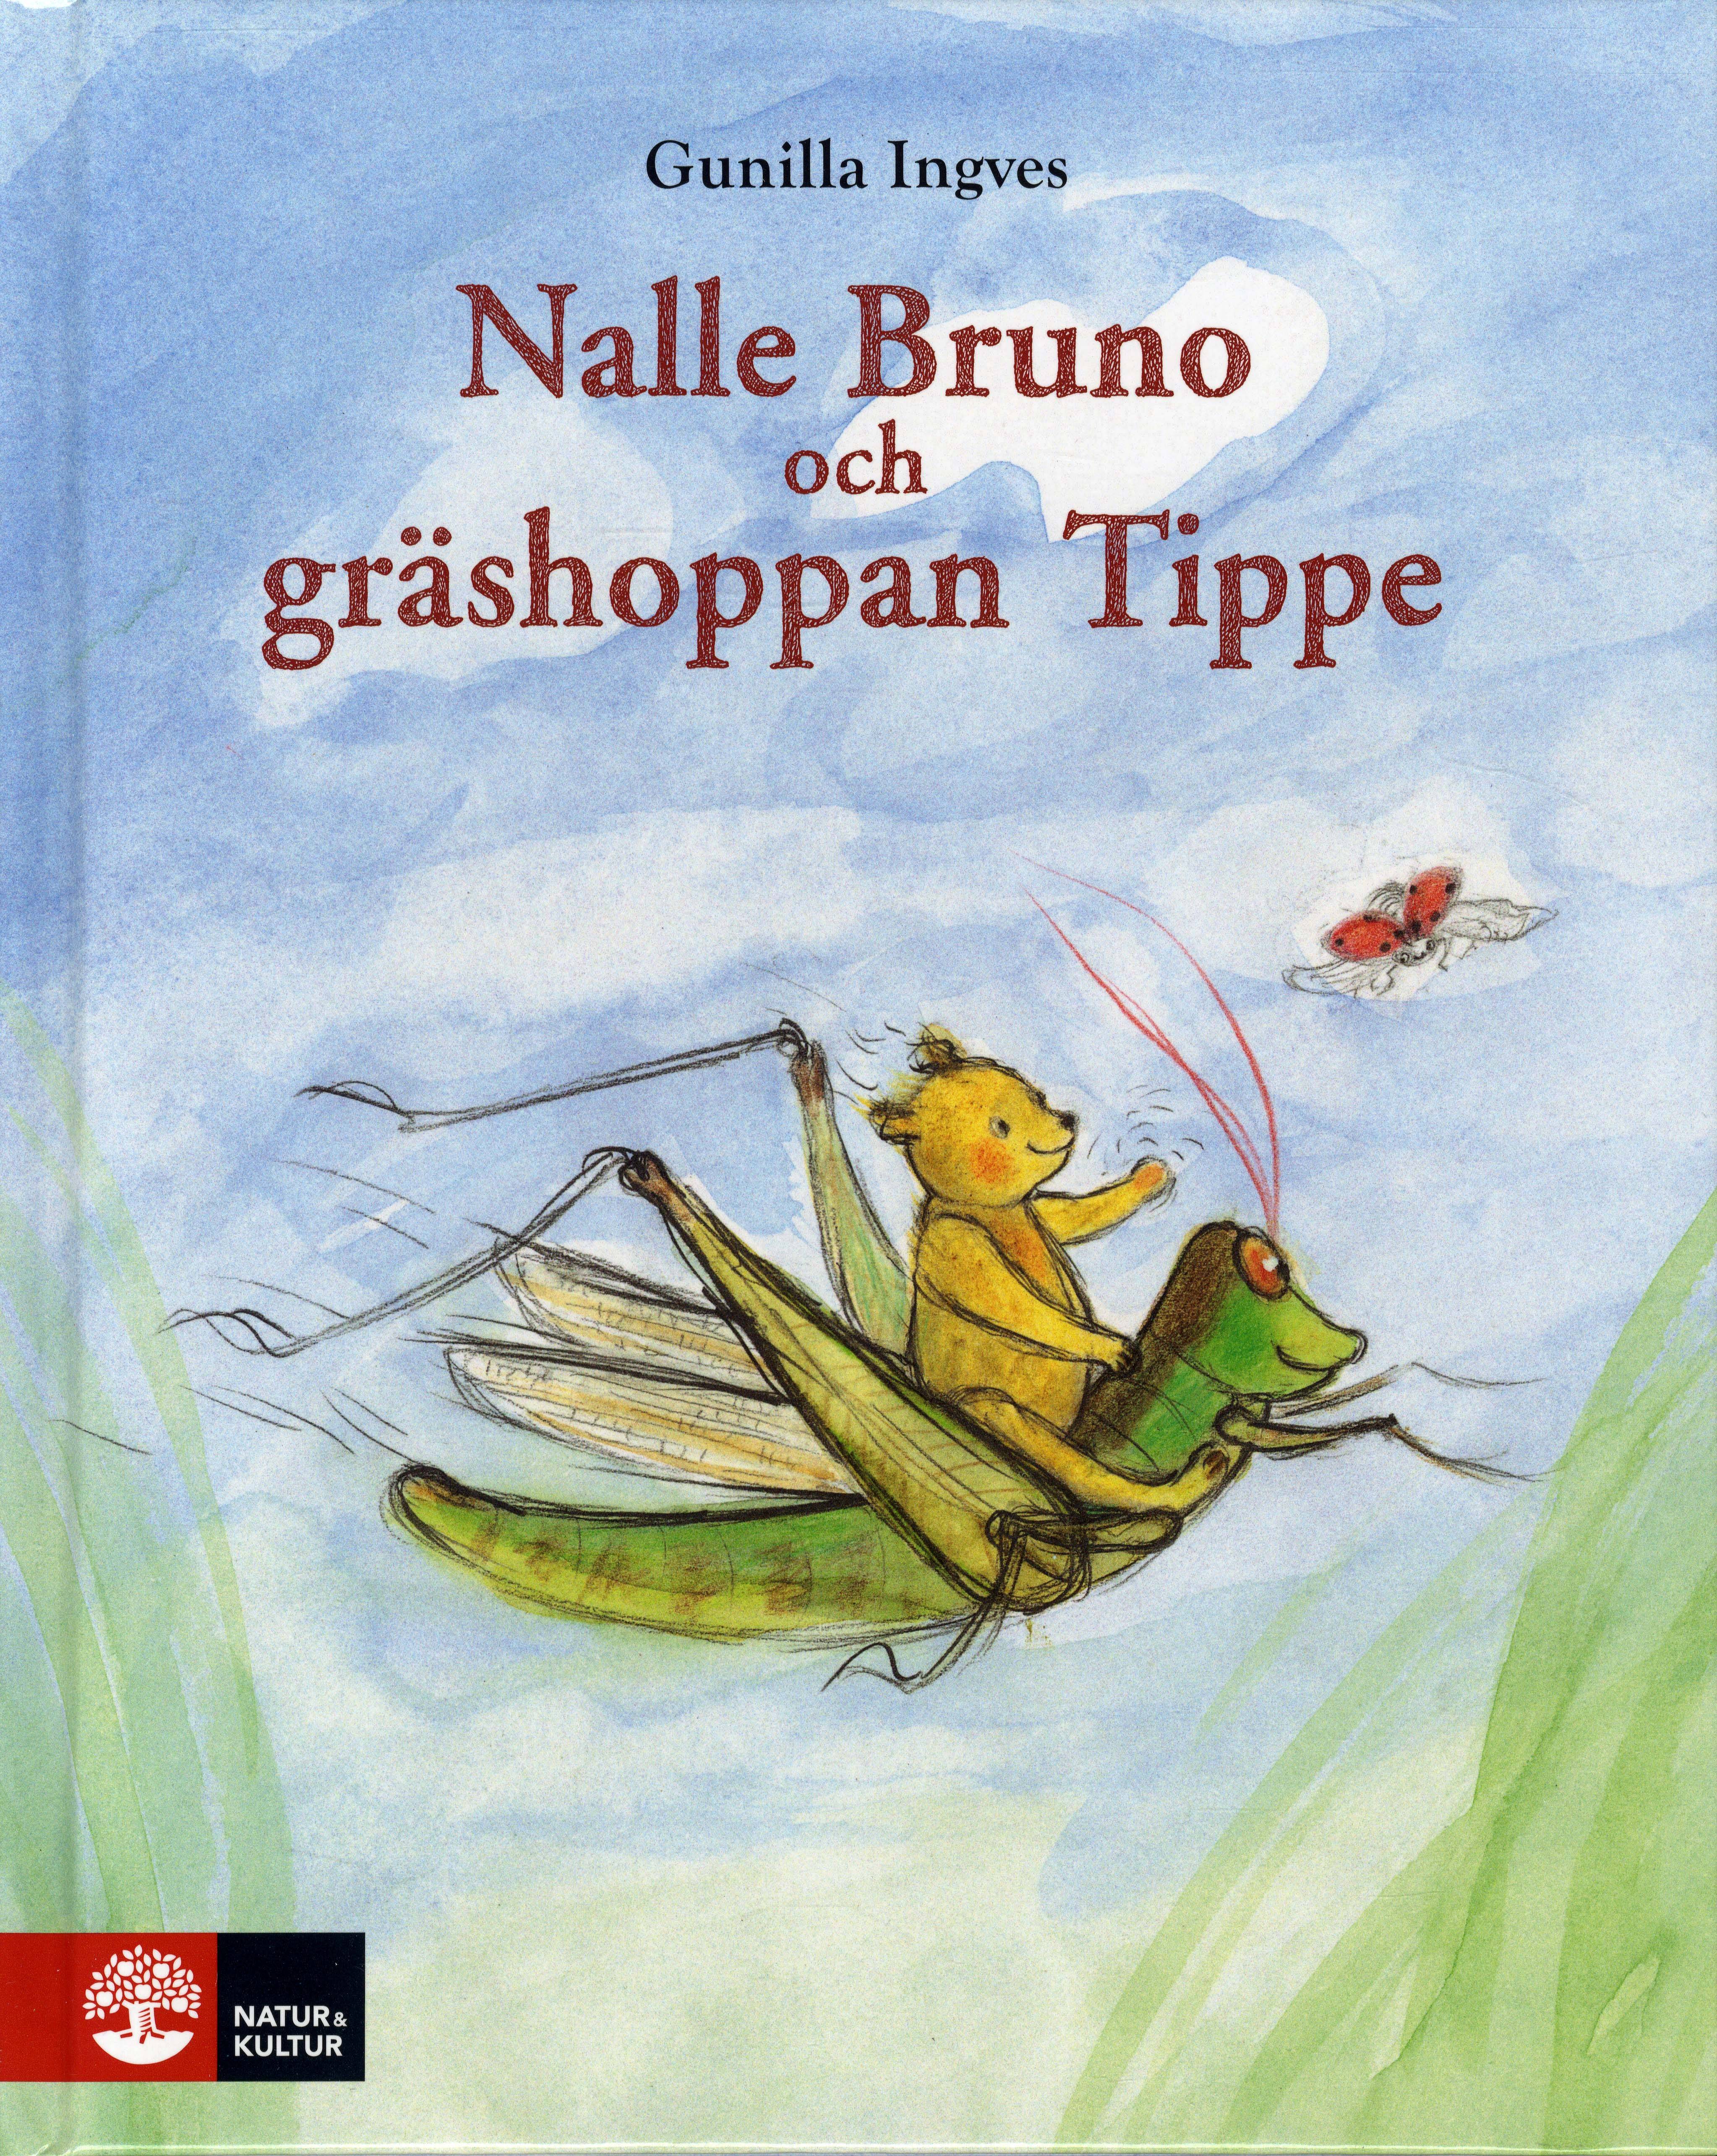 Nalle Bruno och gräshoppan Tippe